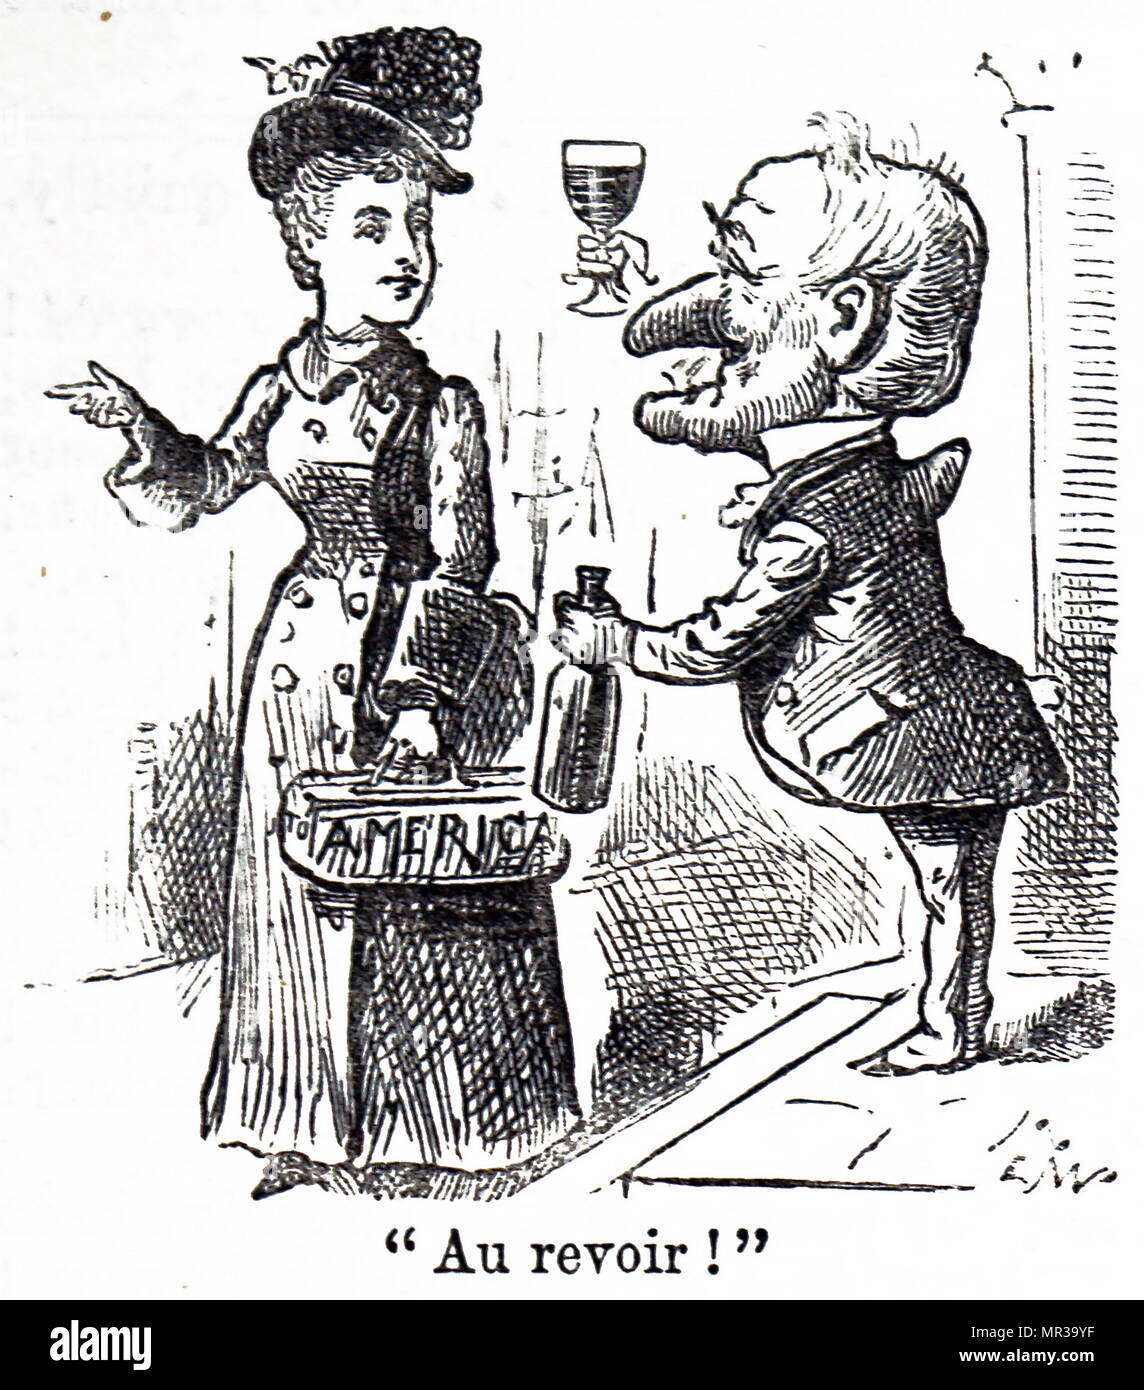 Caricature montrant Adelina Patti avec M. Punch. Adelina Patti (1843-1919) une chanteuse d'opéra franco-italienne. En date du 19e siècle Banque D'Images